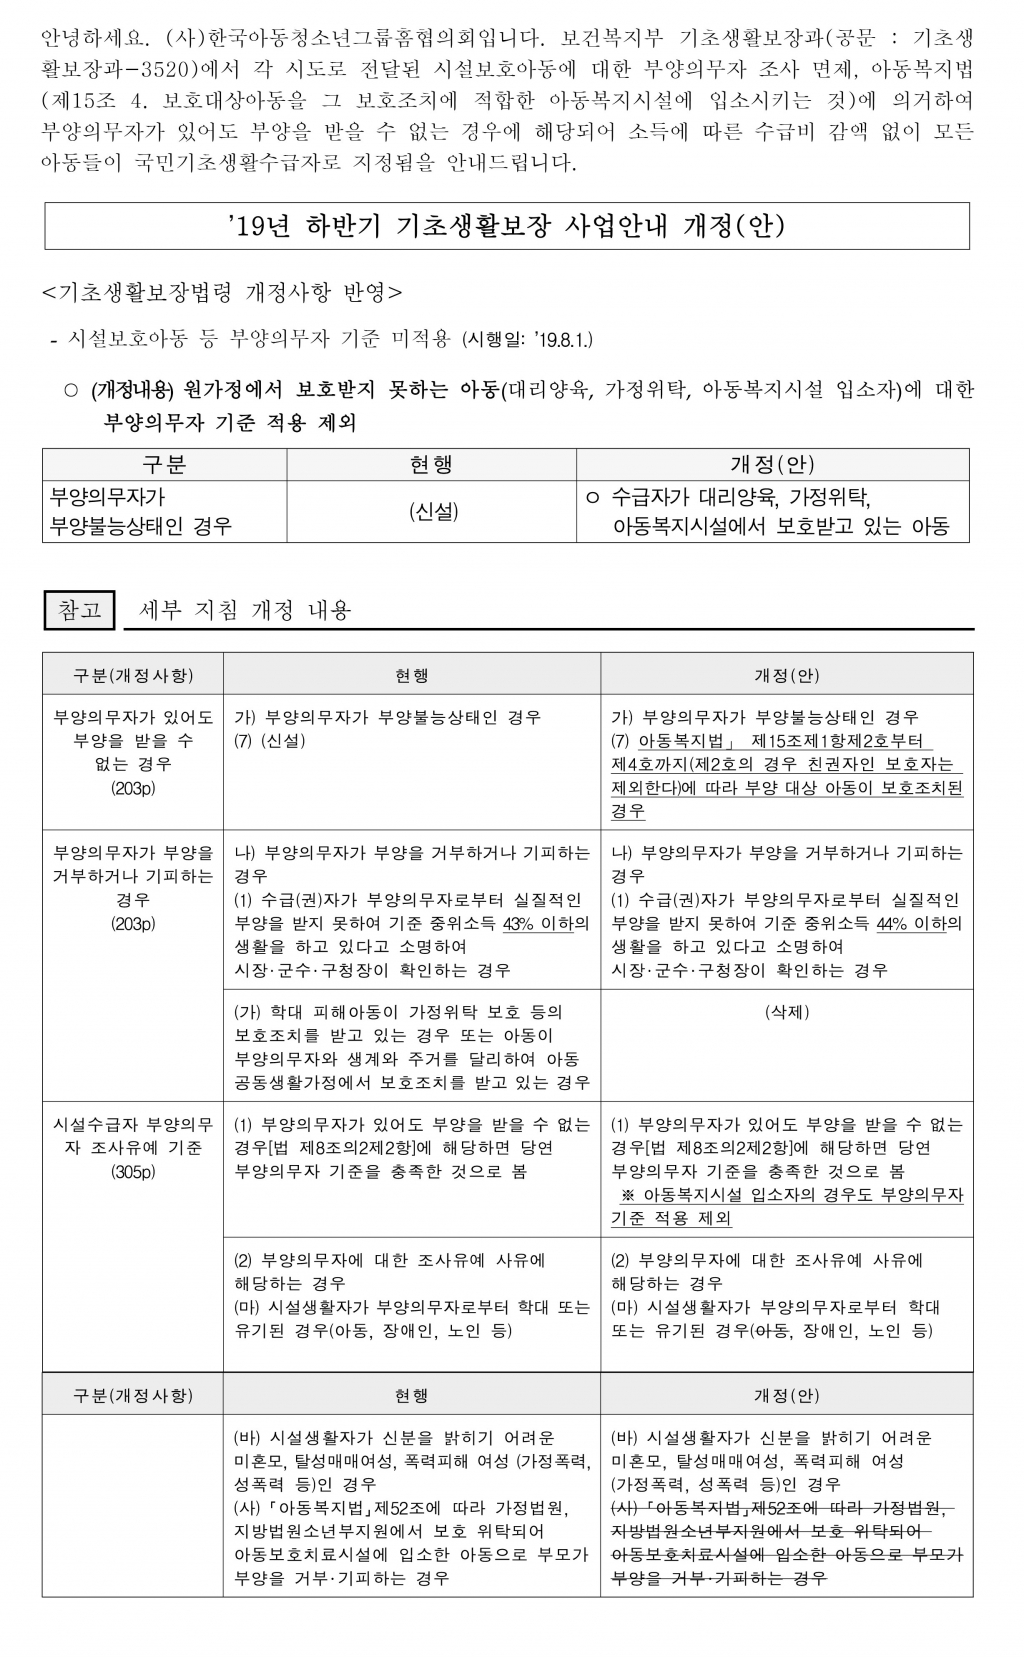 19년 하반기 기초생활보장 사업안내 개정(안).jpg